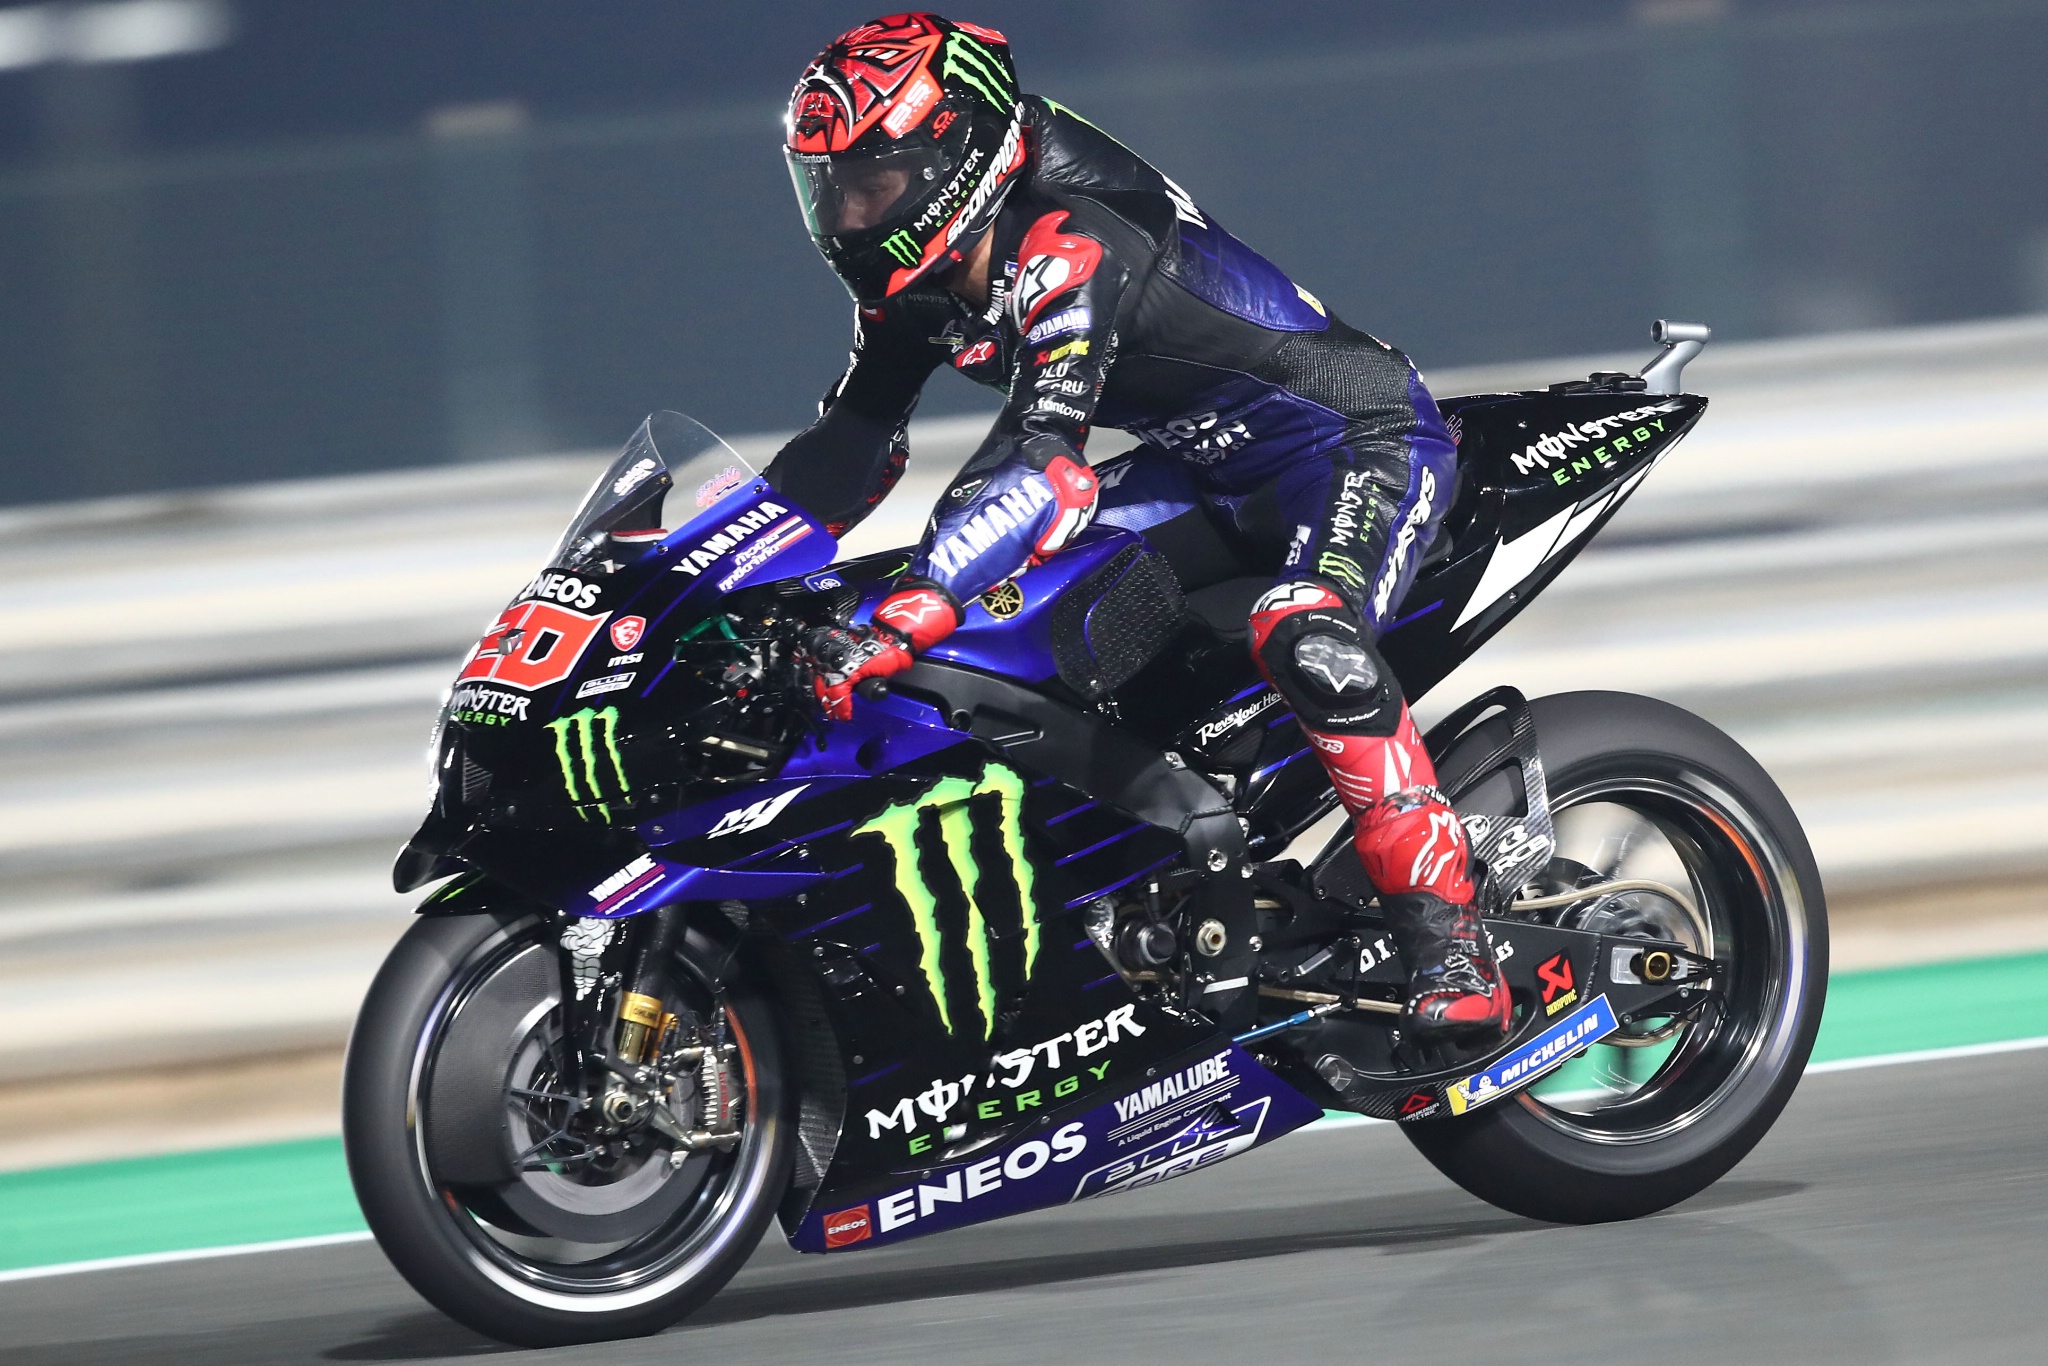 Fabio Quartararo, Qatar] MotoGP, 4 Maret 2022